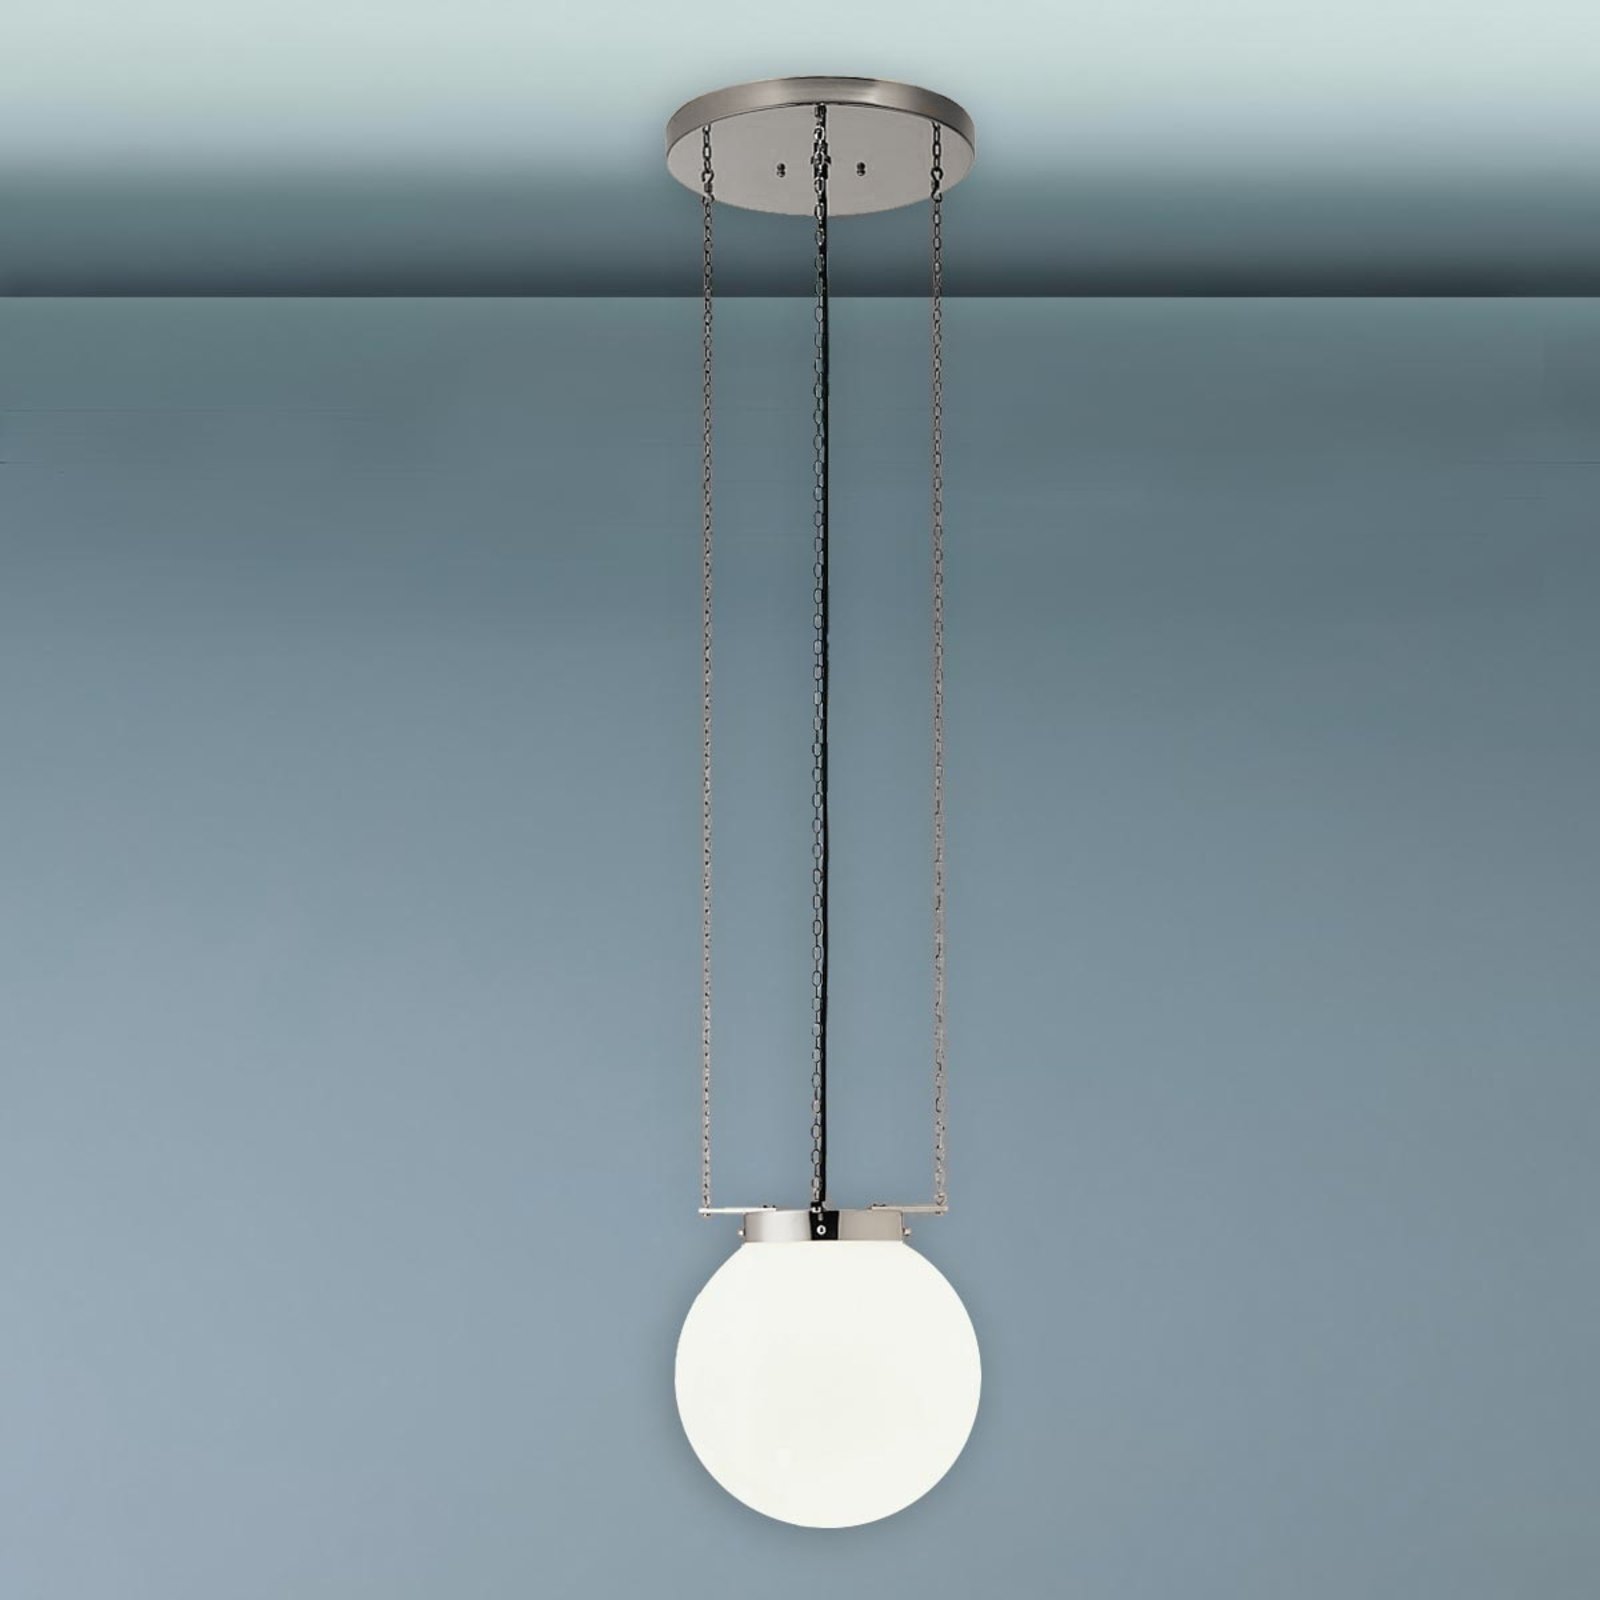 Hanglamp in Bauhaus-stijl, nikkel, 30 cm